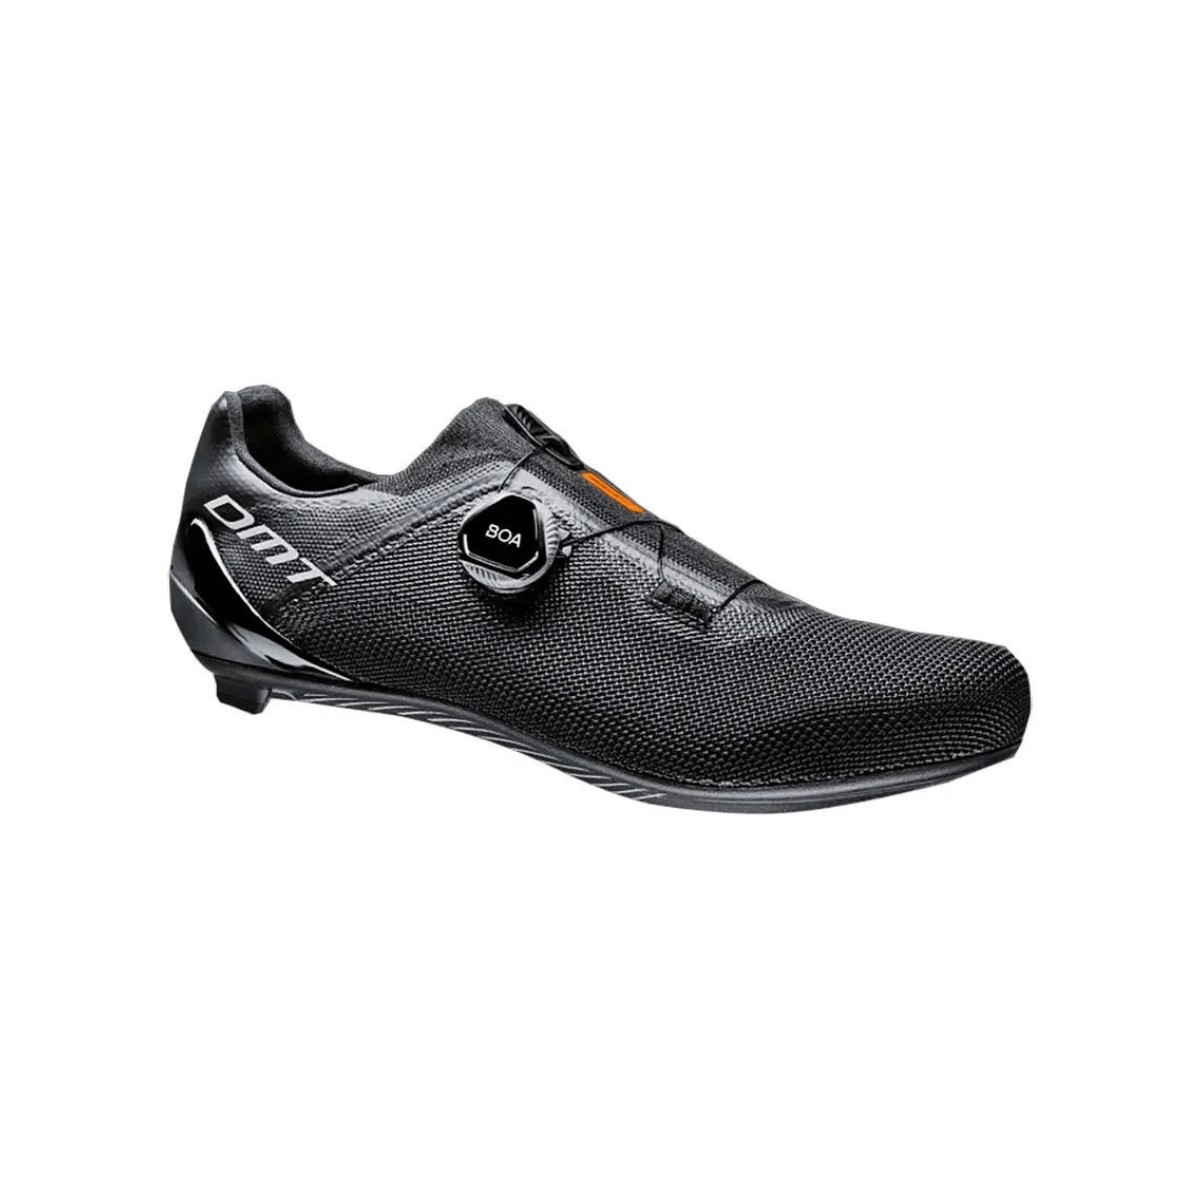 aus 6 günstig Kaufen-DMT KR4 Rennradschuhe Schwarz, Größe 44 - EUR. DMT KR4 Rennradschuhe Schwarz, Größe 44 - EUR <![CDATA[DMT KR4 Rennradschuhe Schwarz Die DMT KR4 Schuhe sind für Roadtrips konzipiert. Sie bestehen aus einem Strickgewebe, das dem Schuh z